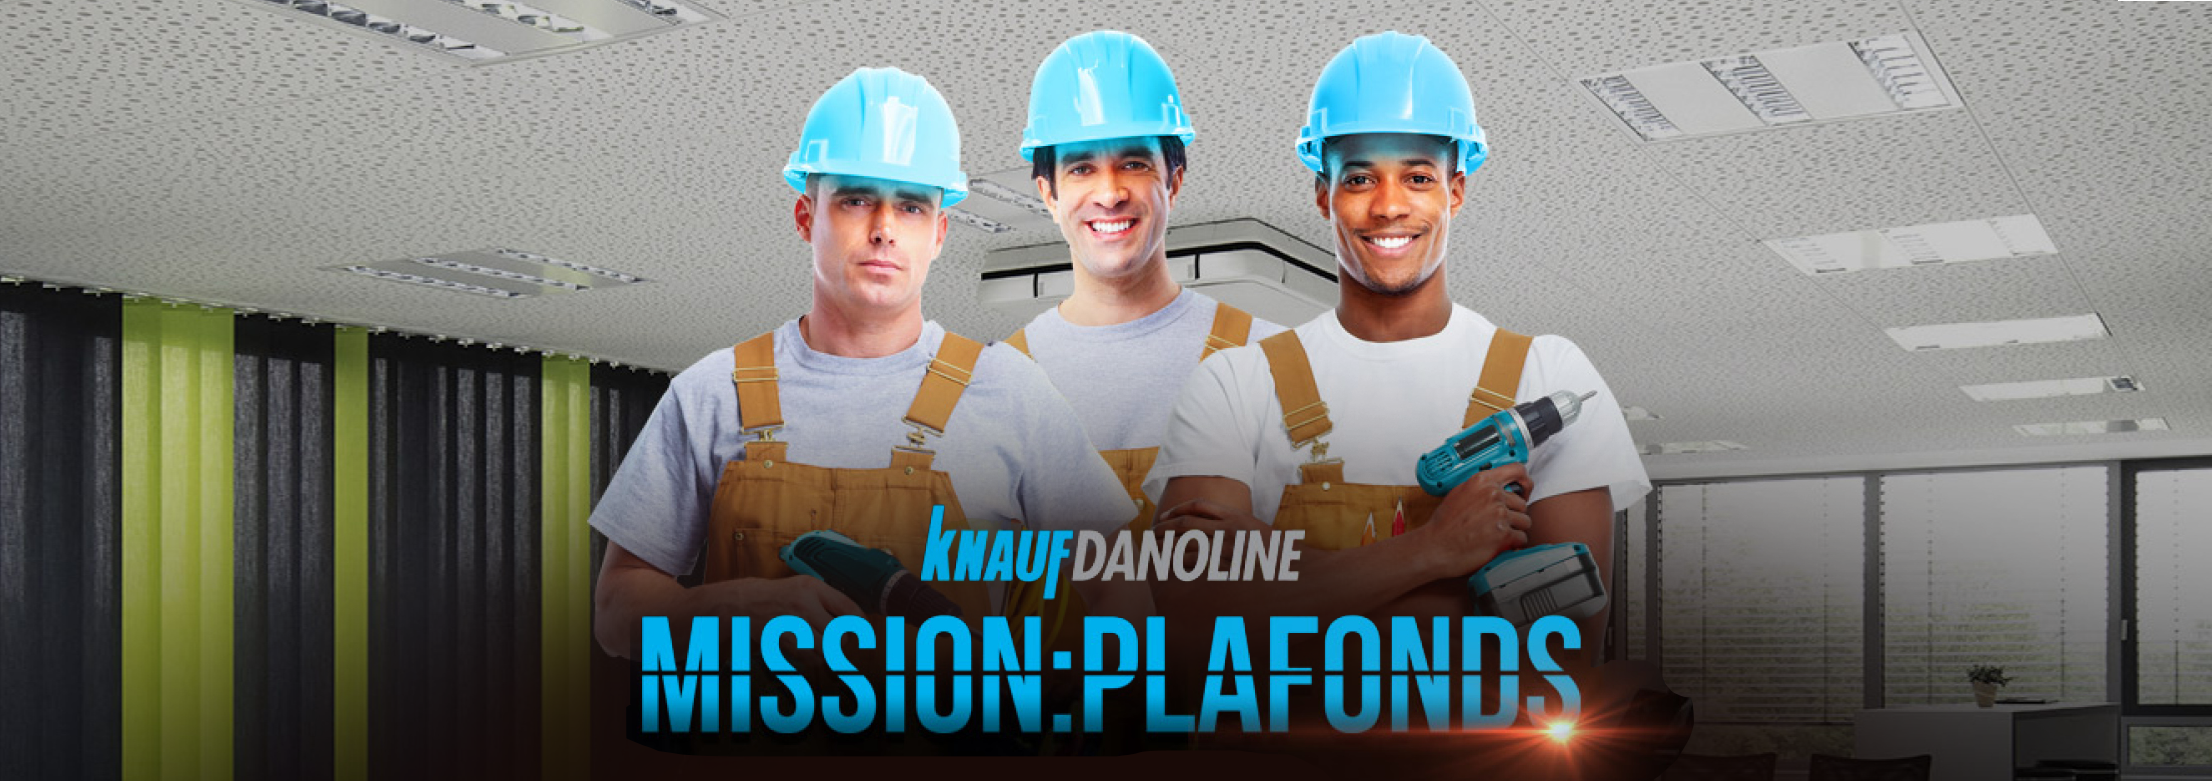 Opération Knauf Danoline Mission:Plafonds